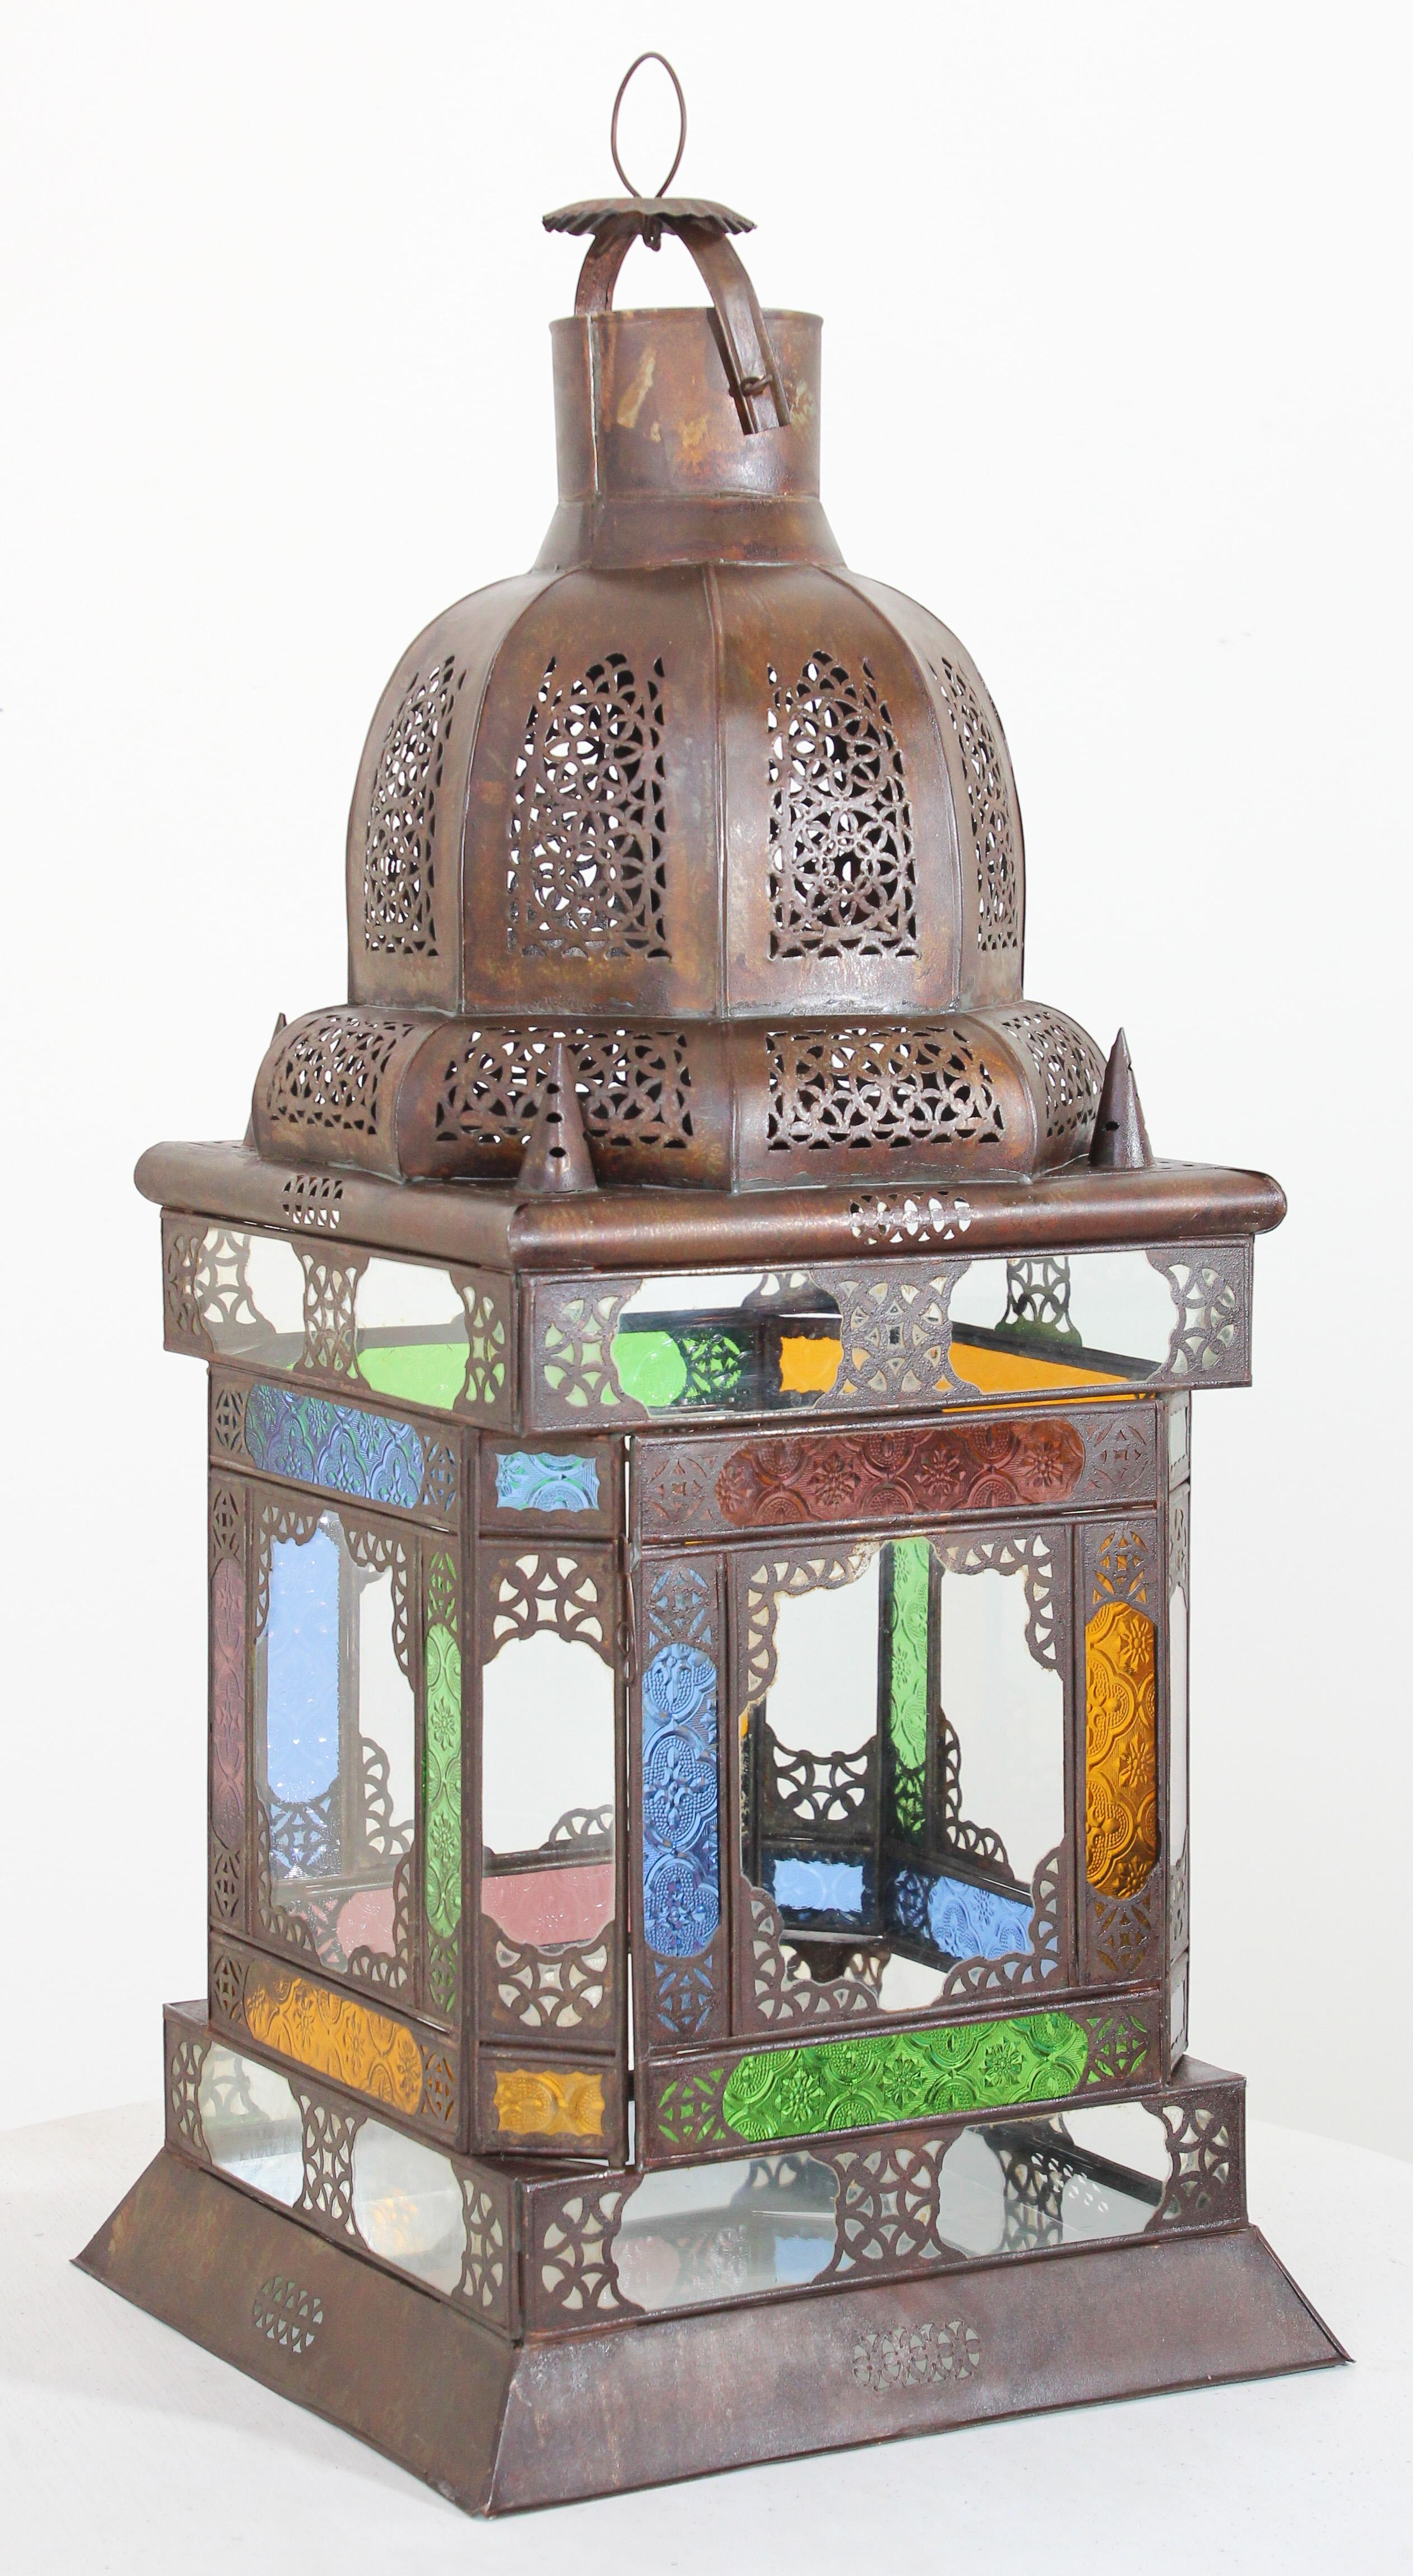 Vintage-Laterne aus marokkanischem Metall mit mehrfarbigem Glas.
Große marokkanische Glaslaterne mit maurischem Design.
Quadratische Form elegante beeindruckende komplizierte durchbrochene Metall und Glas marokkanische Laterne,
29 Zoll hoch mit